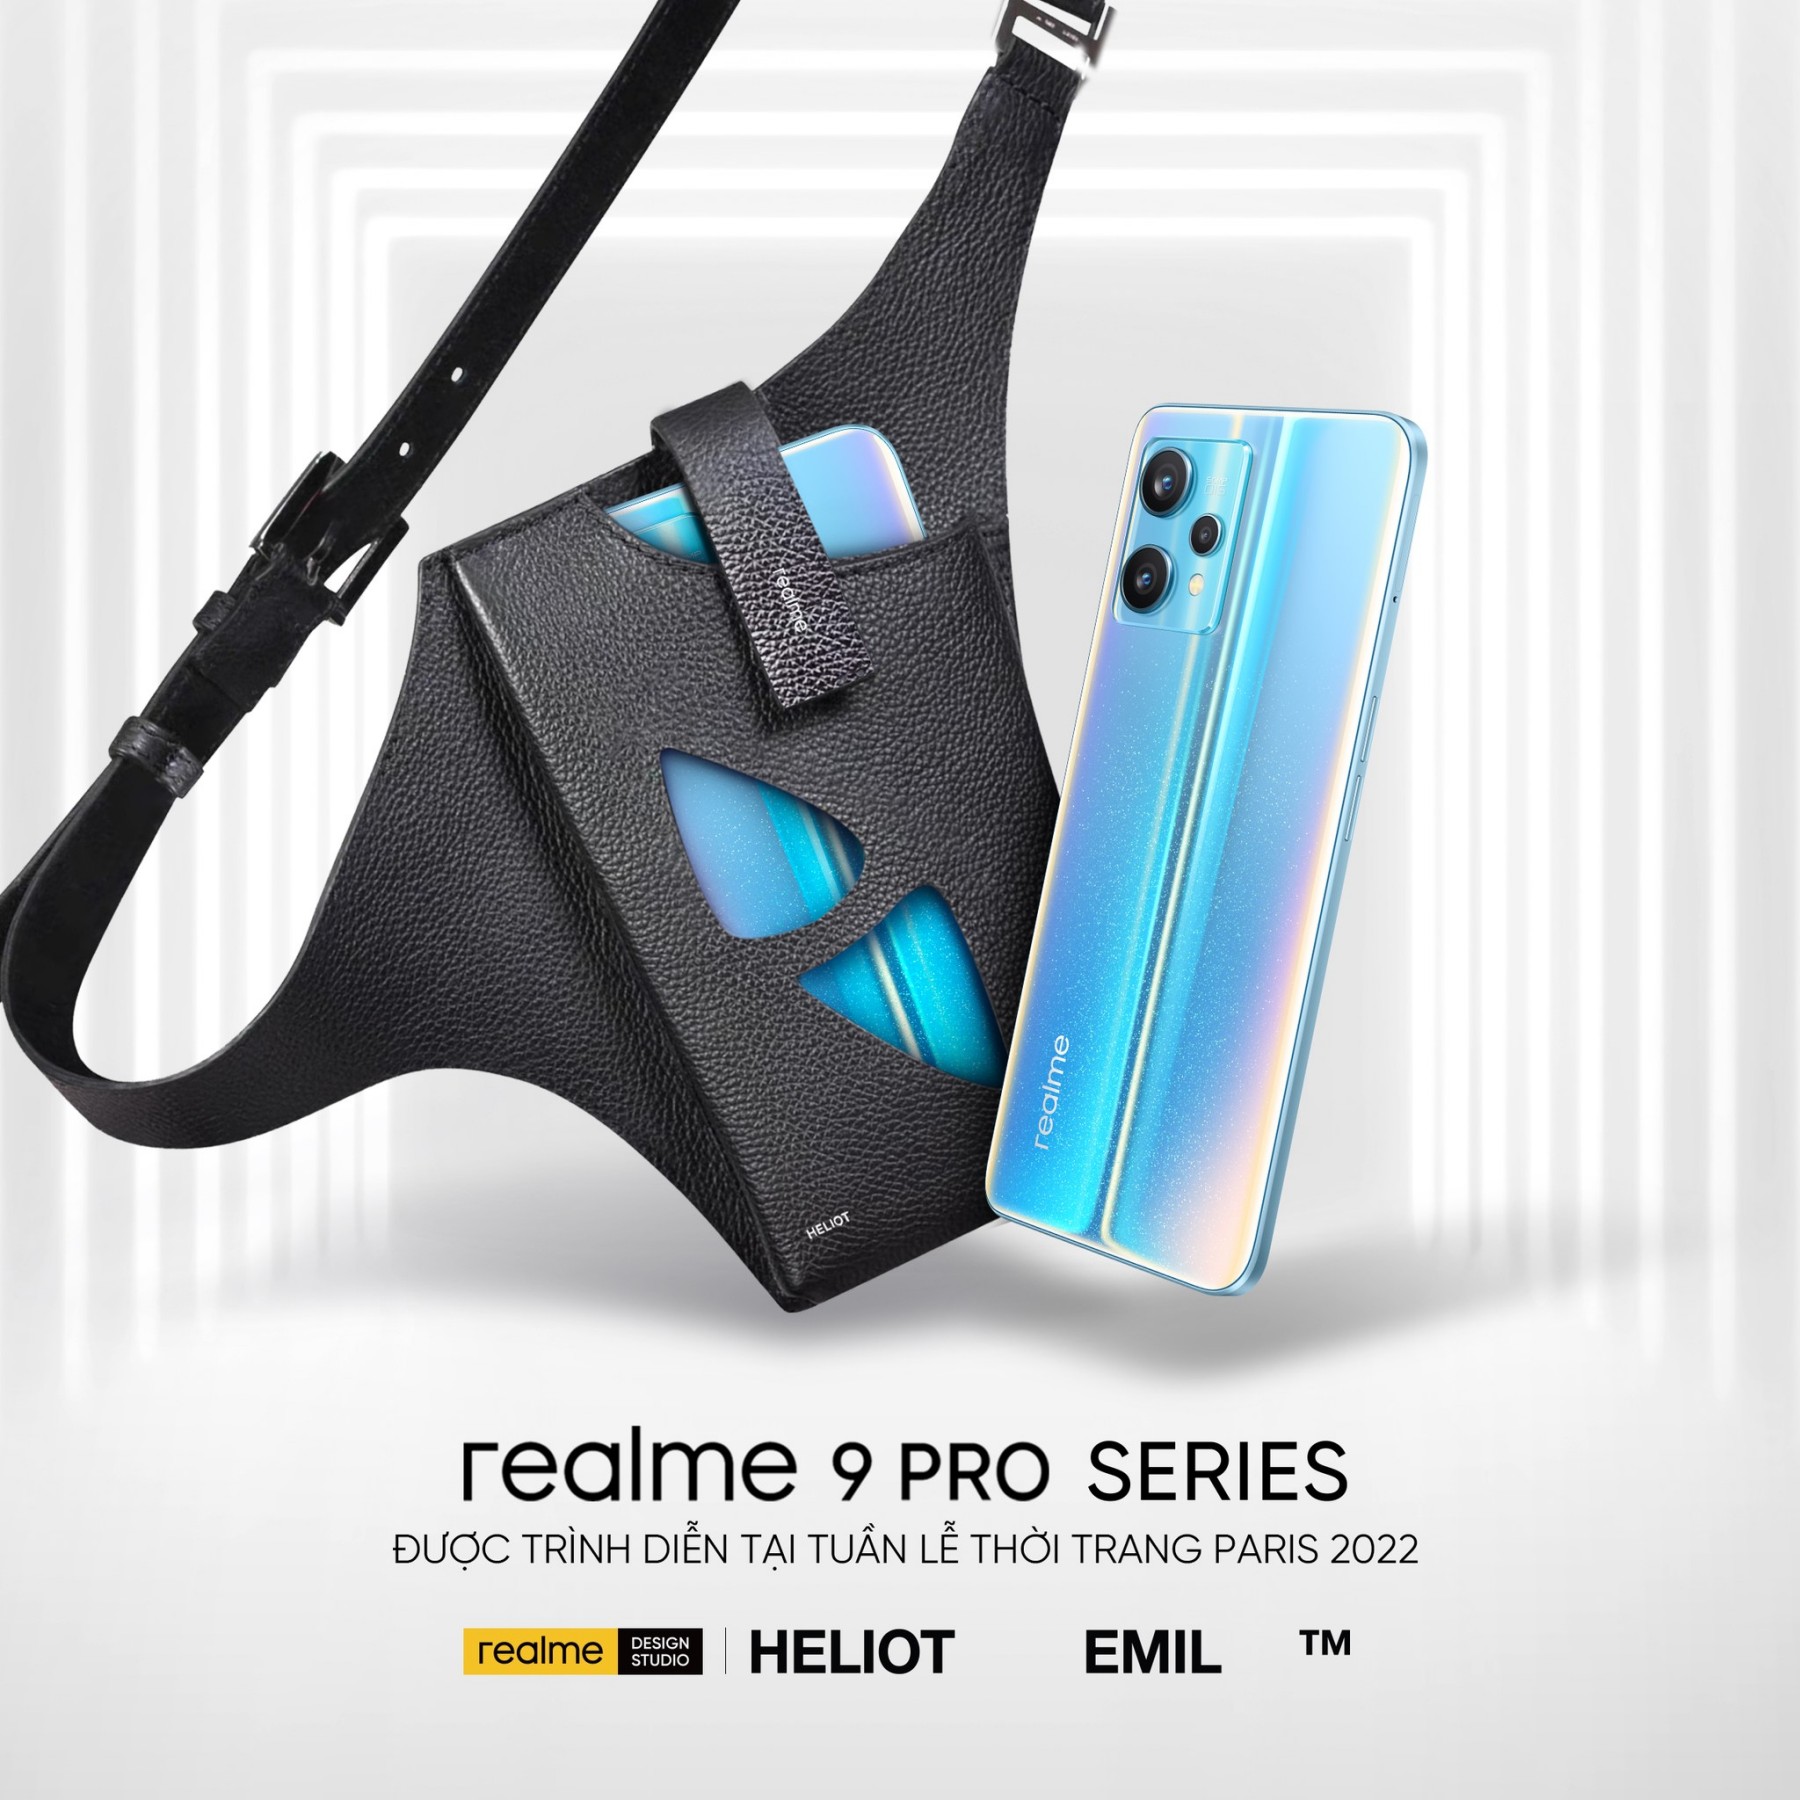 Chính thức công bố giá bán realme 9 Pro Series tại thị trường Việt Nam